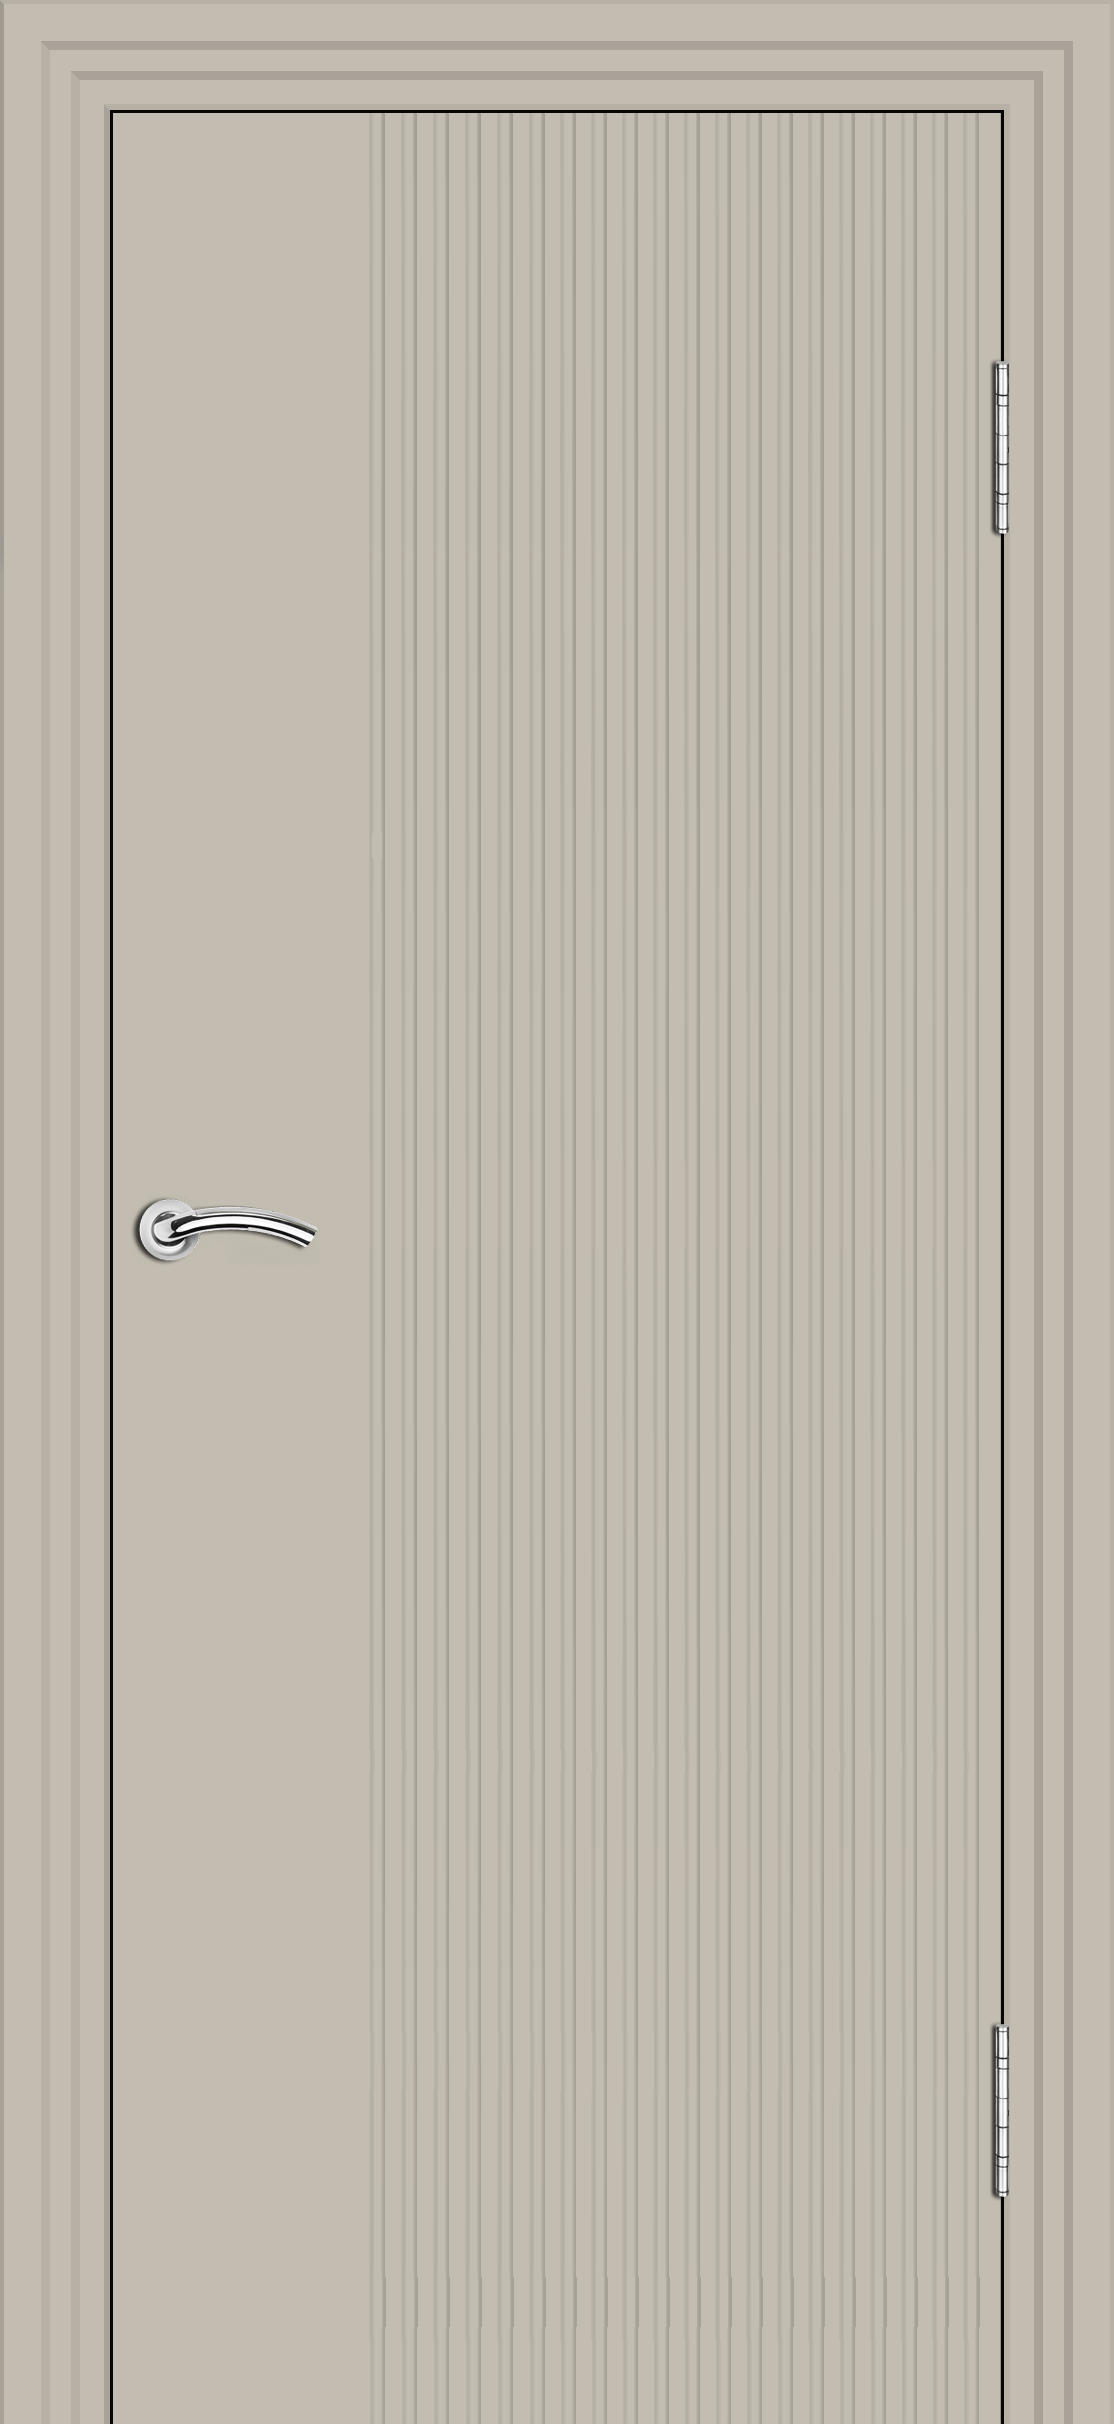 Межкомнатная дверь «Ультра-1». Вид отделки Слоновая кость эмаль Cтандартный наличник